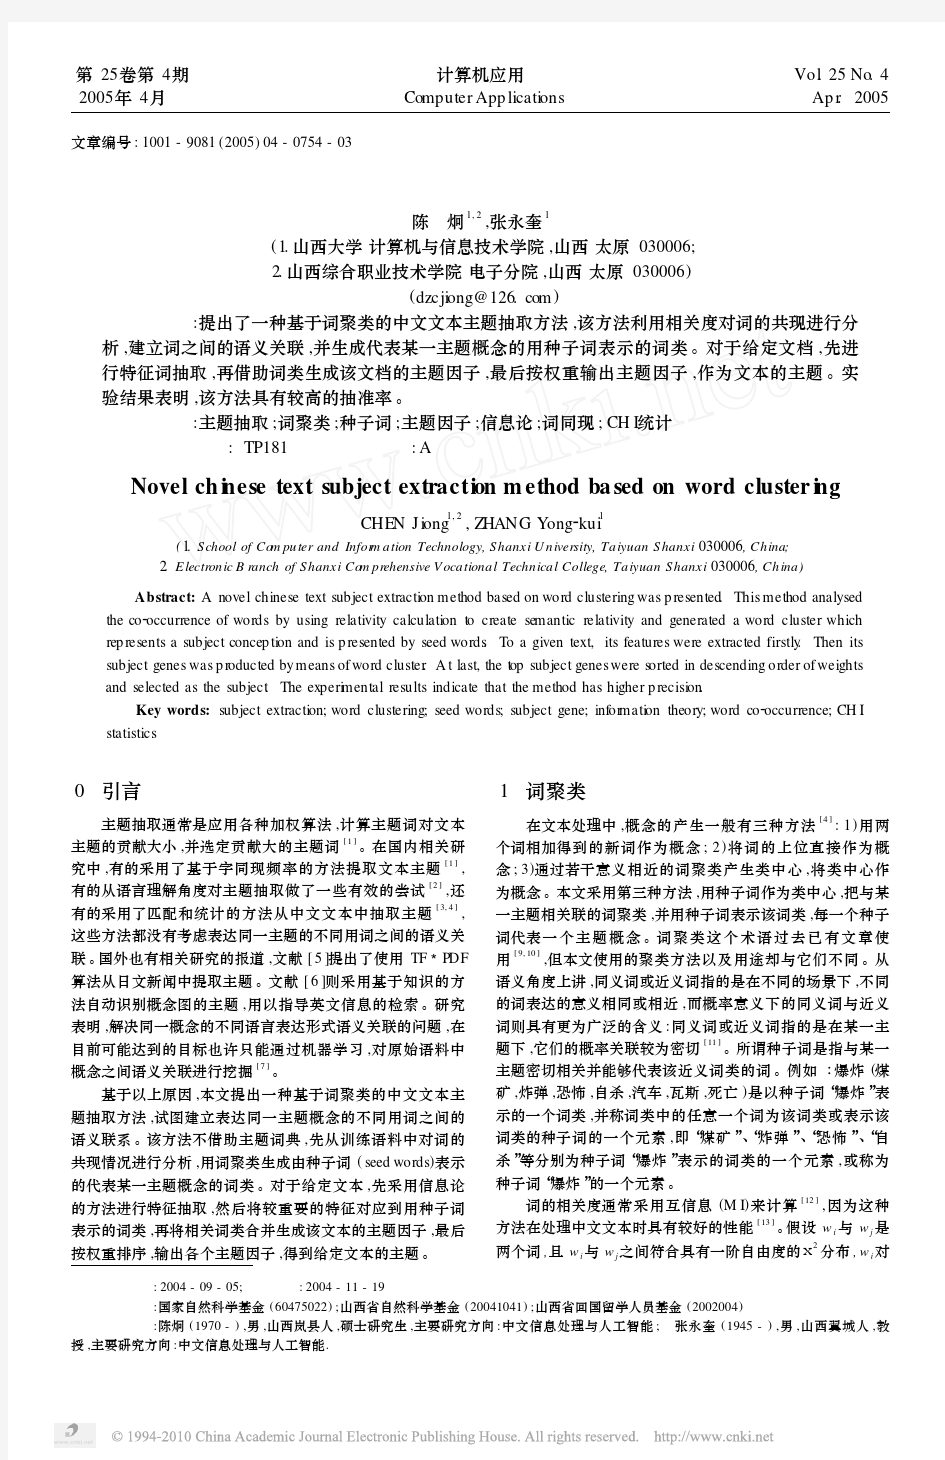 一种基于词聚类的中文文本主题抽取方法